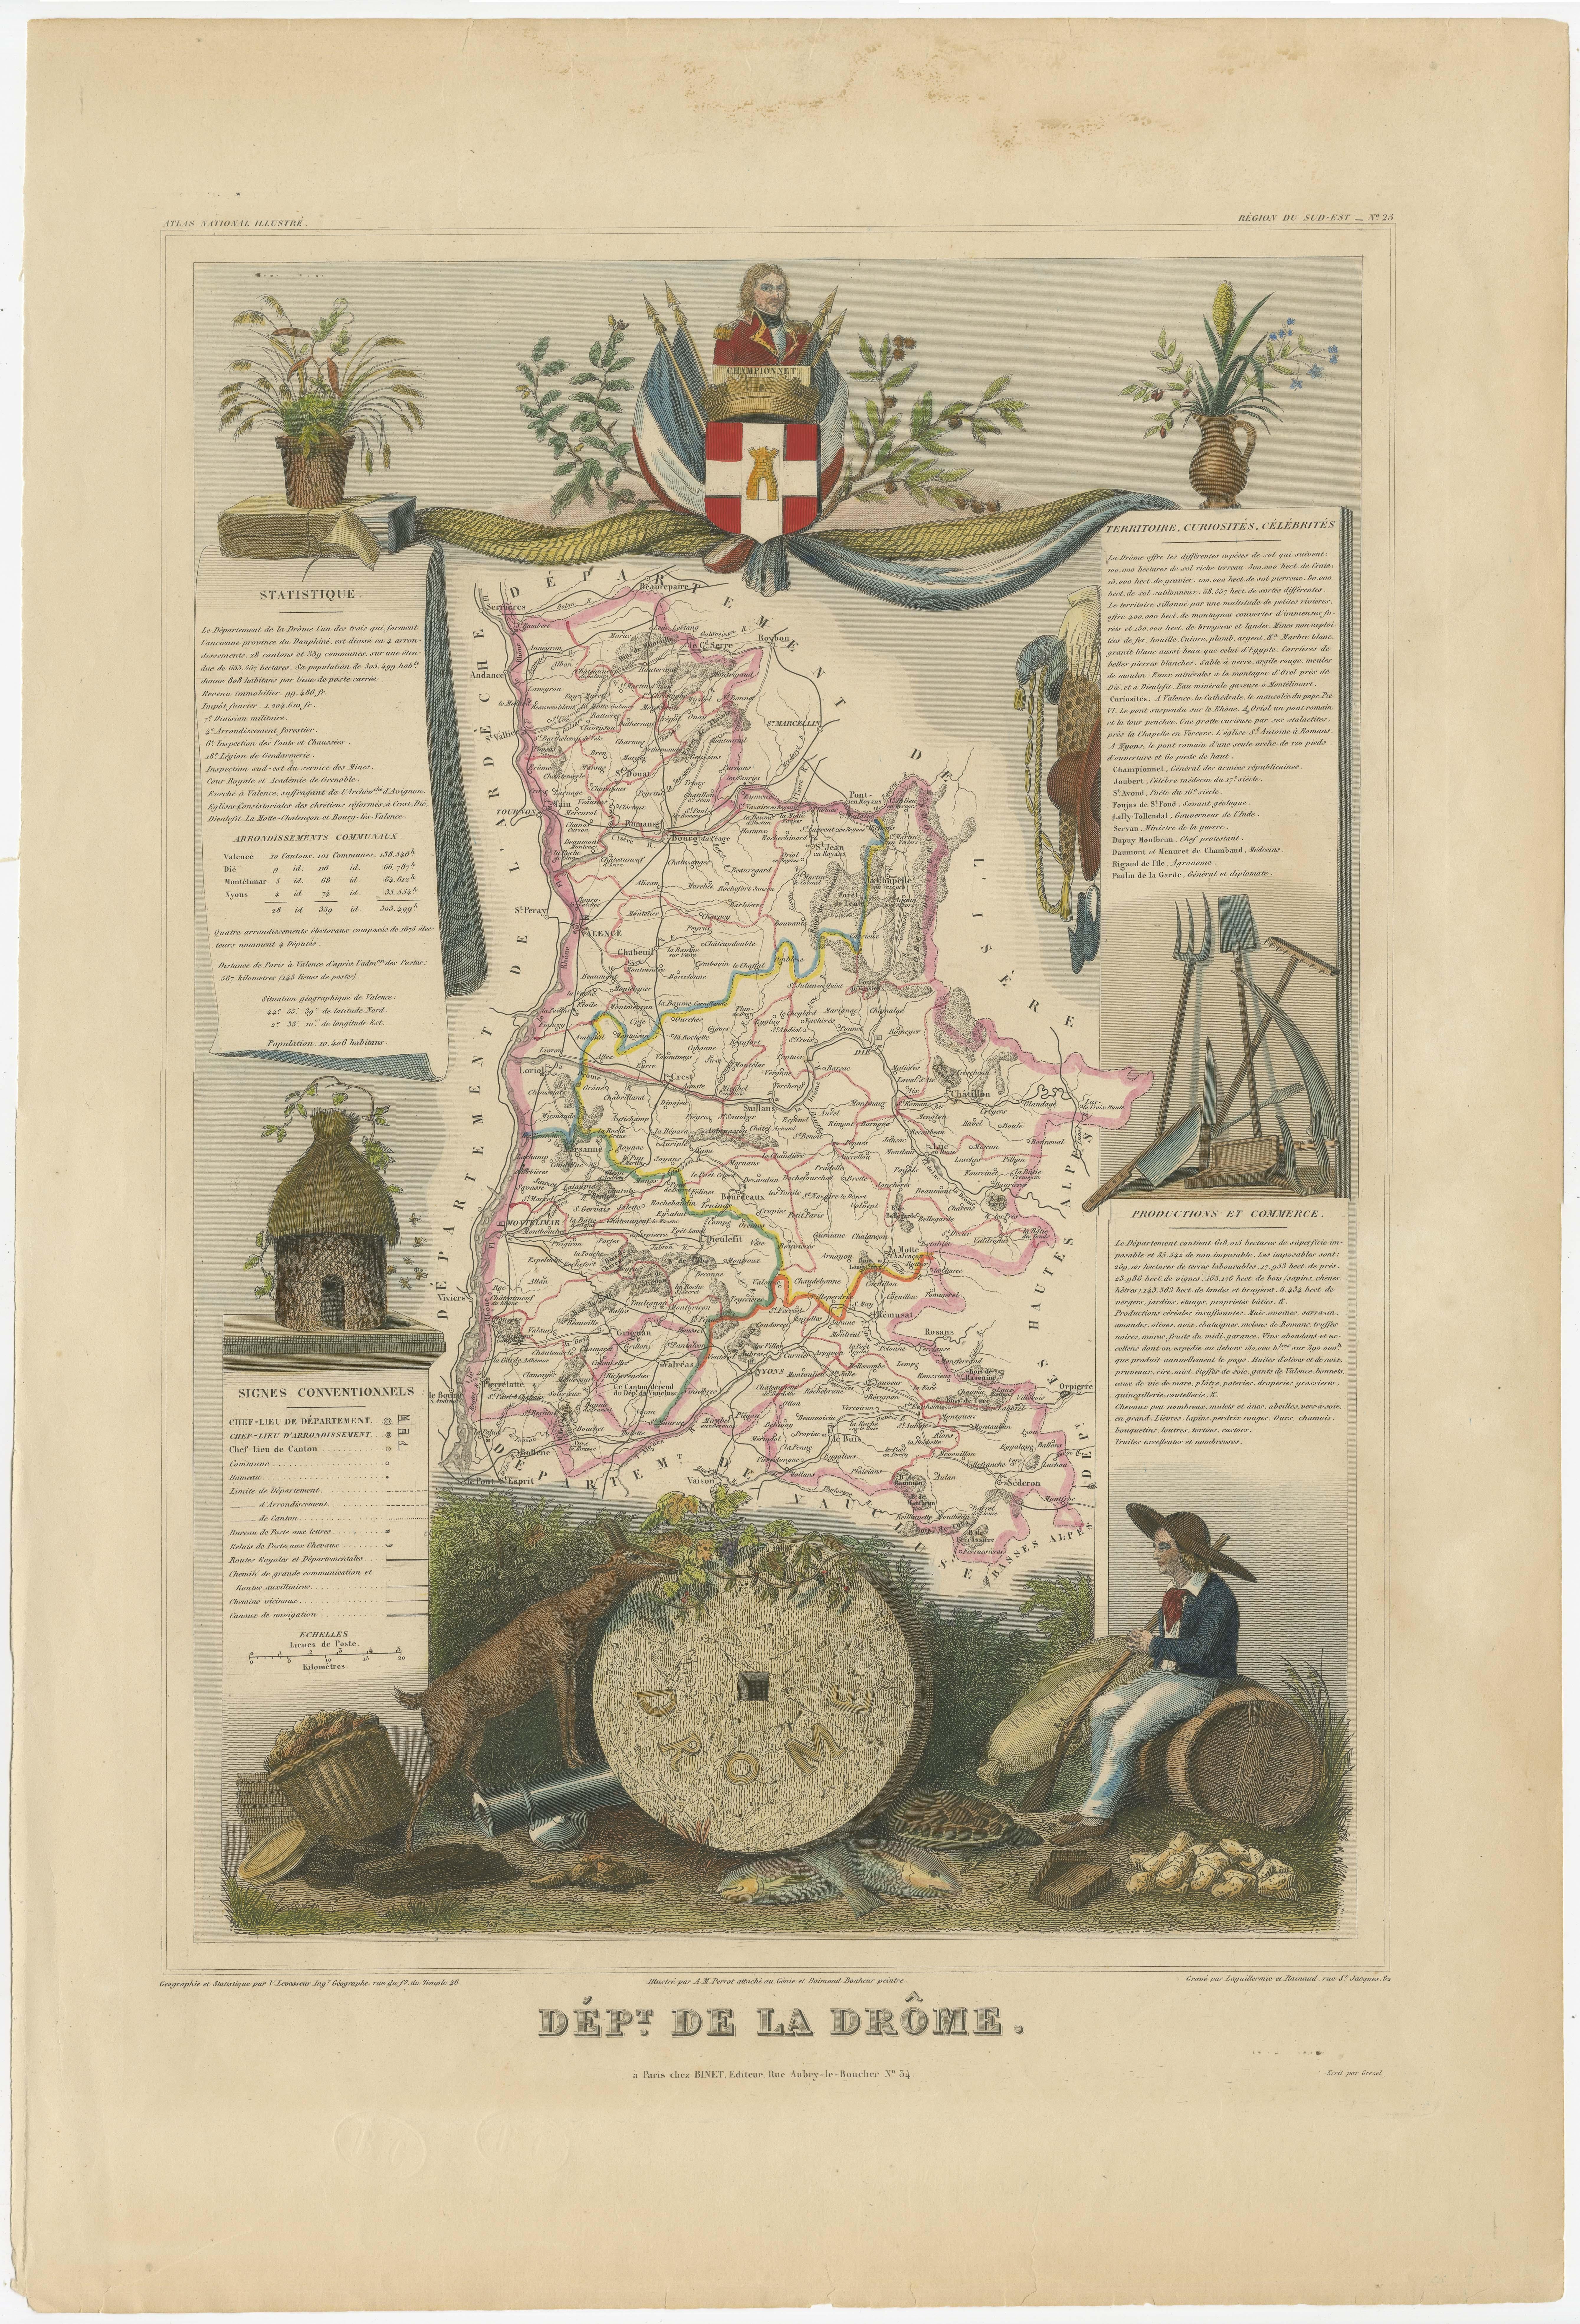 Antike Karte mit dem Titel 'Dépt. de la Drôme'. Karte des französischen Departements Drôme, Frankreich. Dieses Gebiet ist bekannt für die Herstellung von Picodon, einem würzigen Ziegenmilchkäse. Das Ganze ist von aufwendigen dekorativen Gravuren